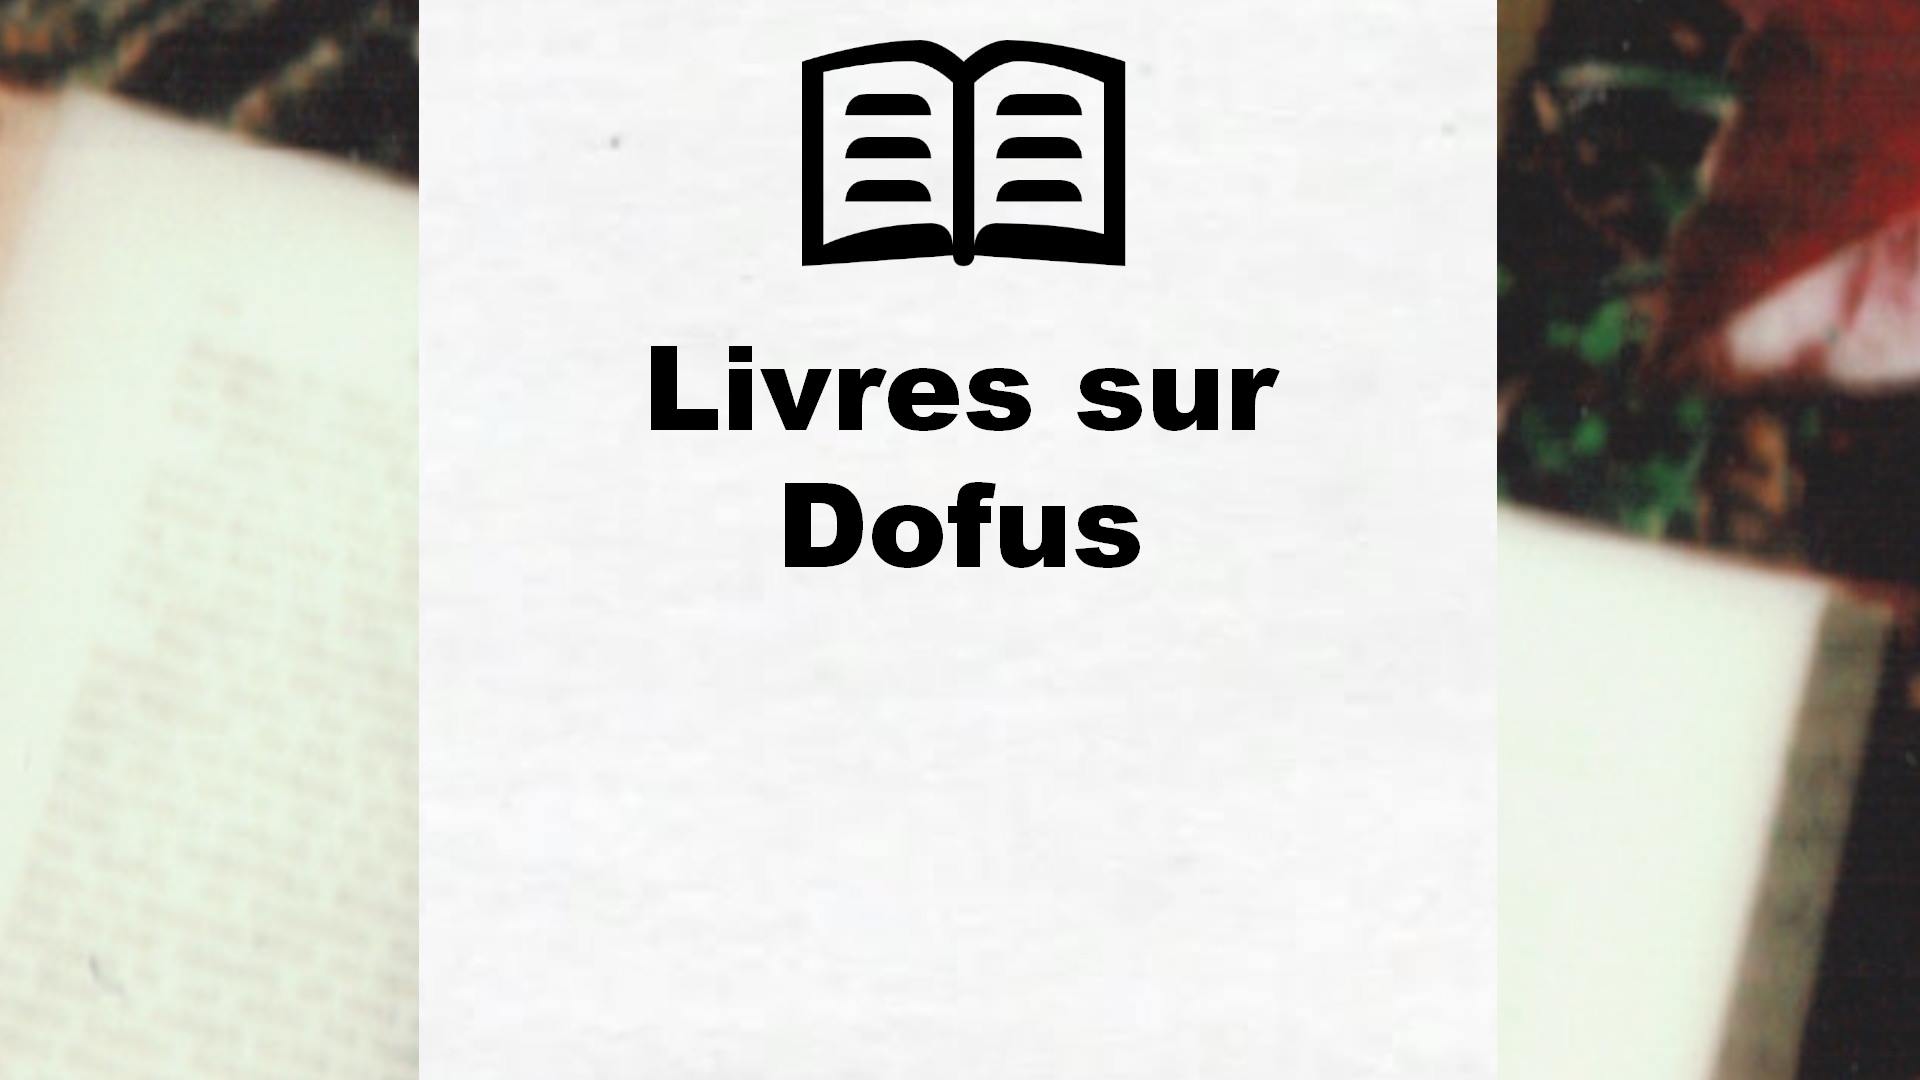 Livres sur Dofus